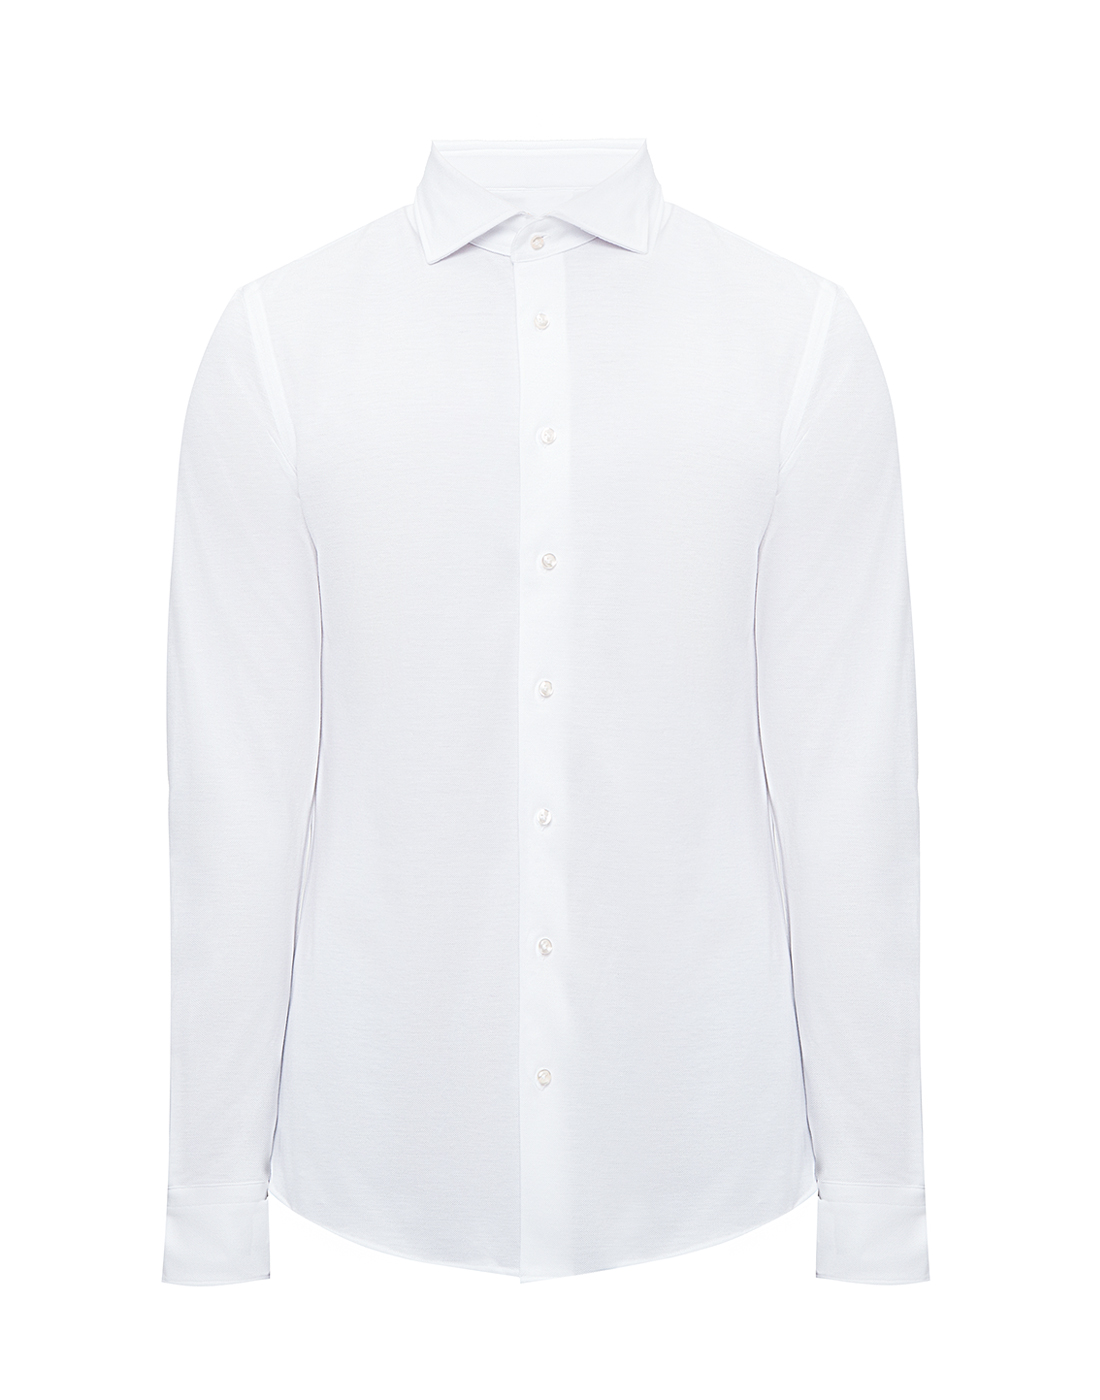 Мужская белая рубашка Profuomo SPP0H0A001-1